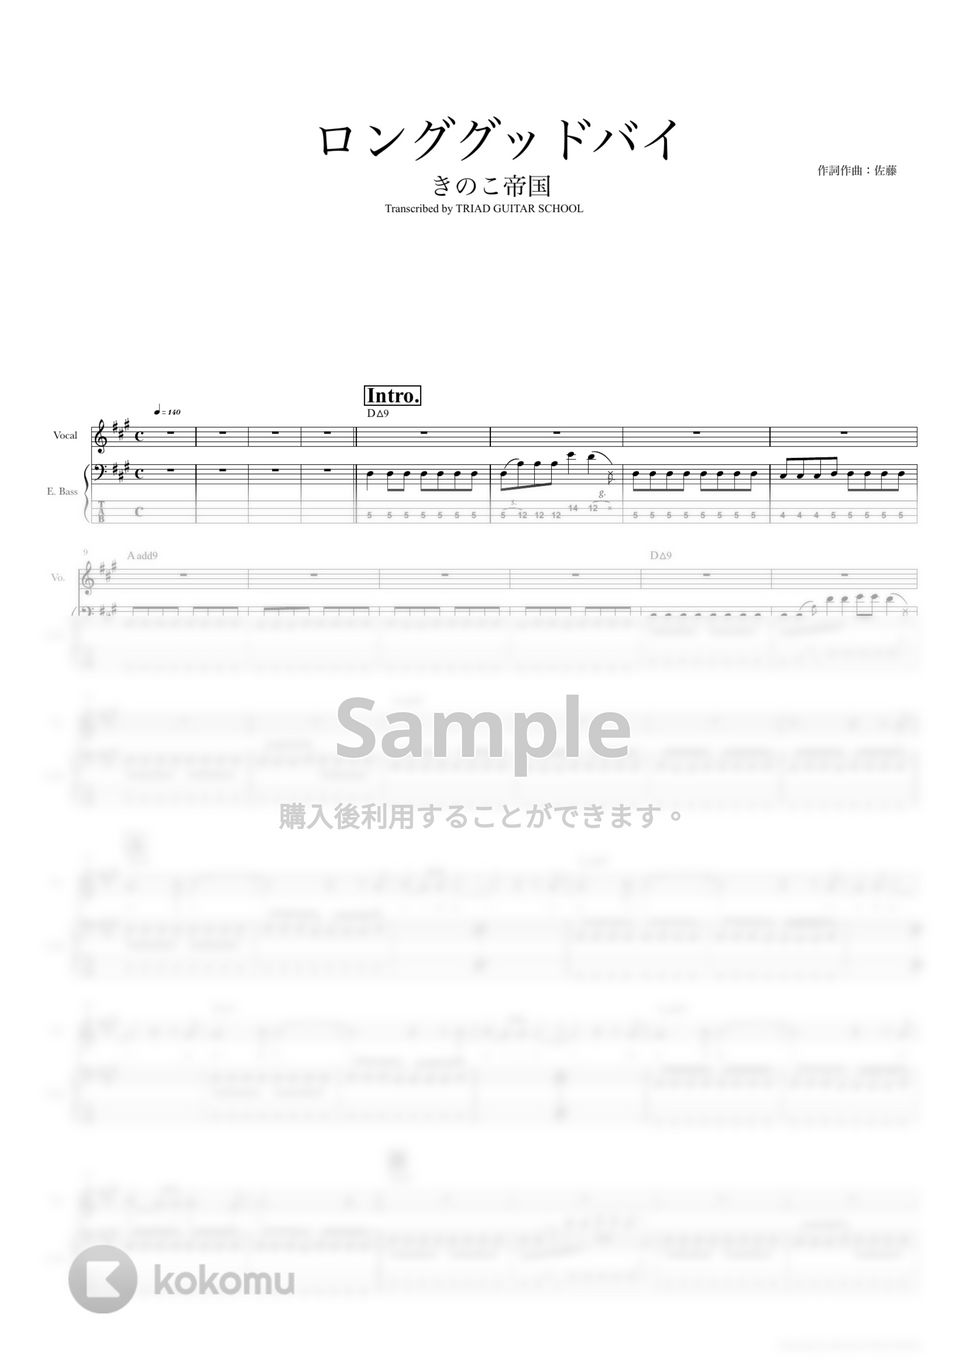 きのこ帝国 - ロンググッドバイ (ベーススコア・歌詞・コード付き) by TRIAD GUITAR SCHOOL